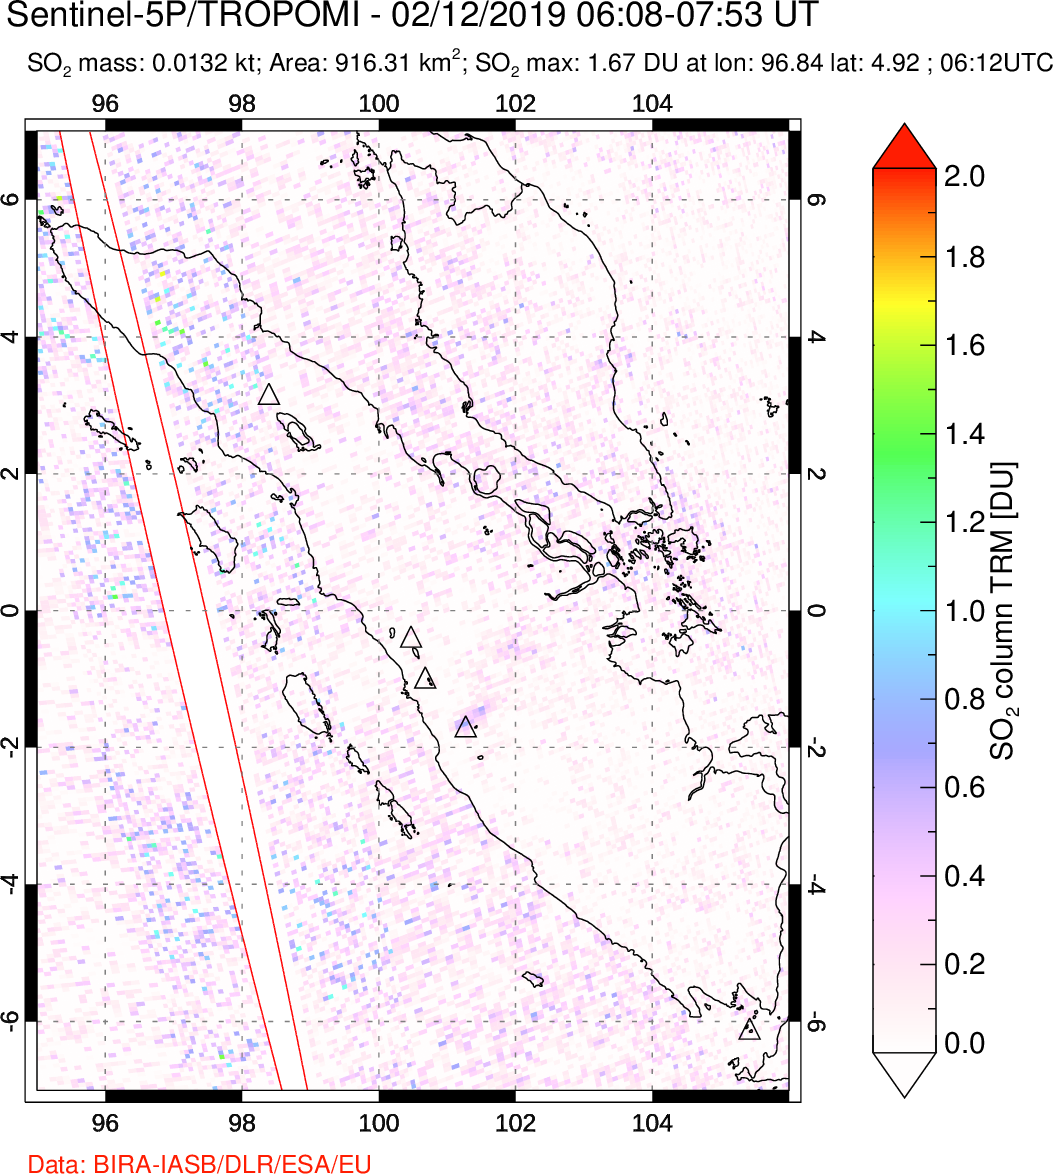 A sulfur dioxide image over Sumatra, Indonesia on Feb 12, 2019.